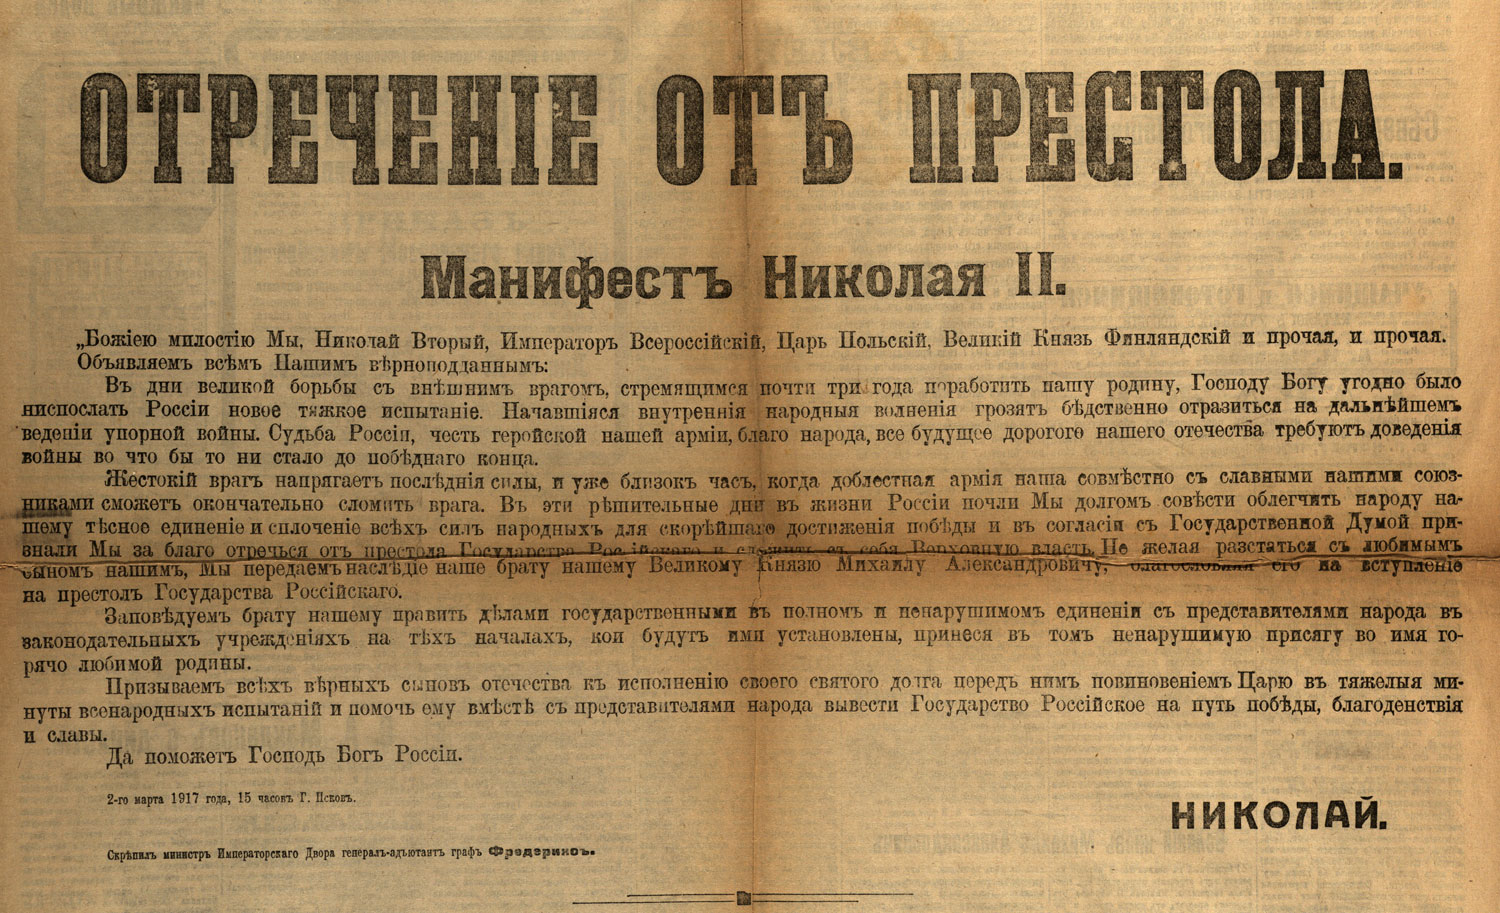 15 Марта 1917 года отречение Николая II от престола